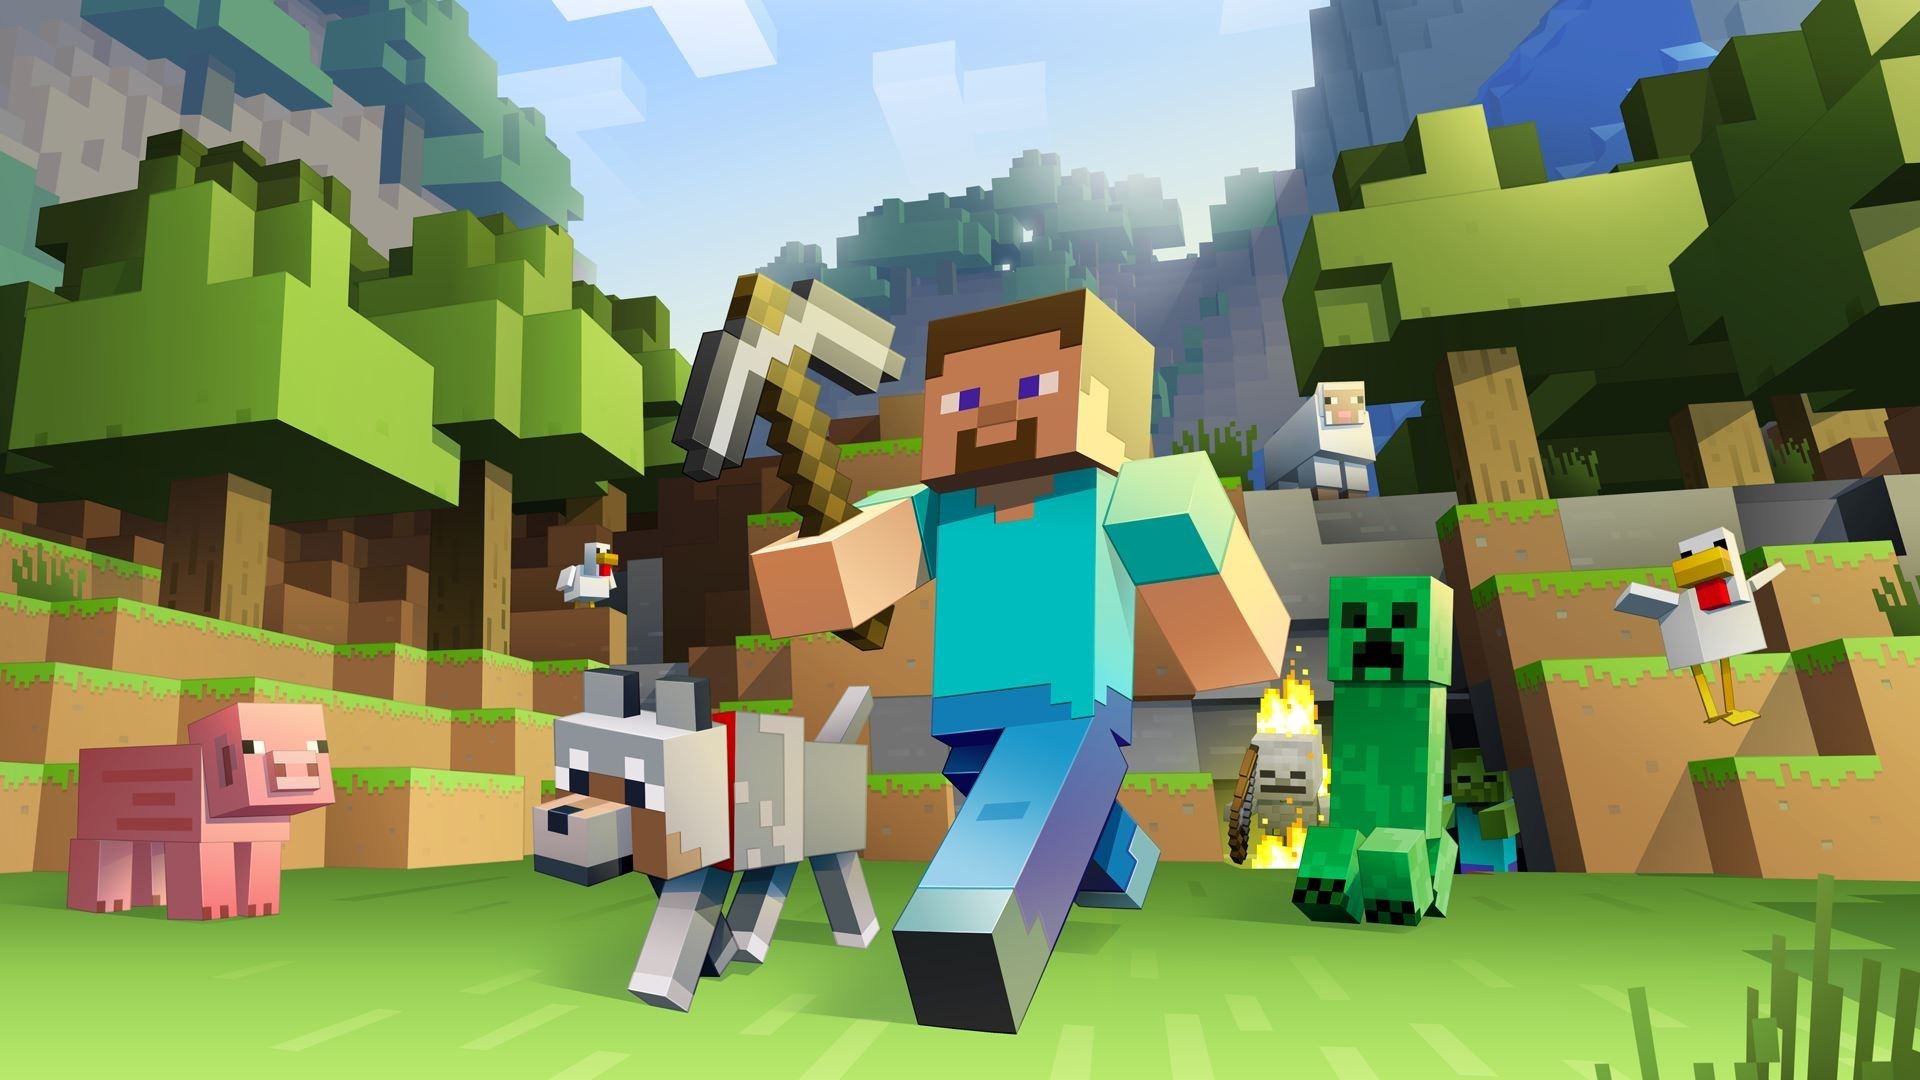 Minecraft chega a 200 milhões em vendas, segundo Microsoft | Jogos ...